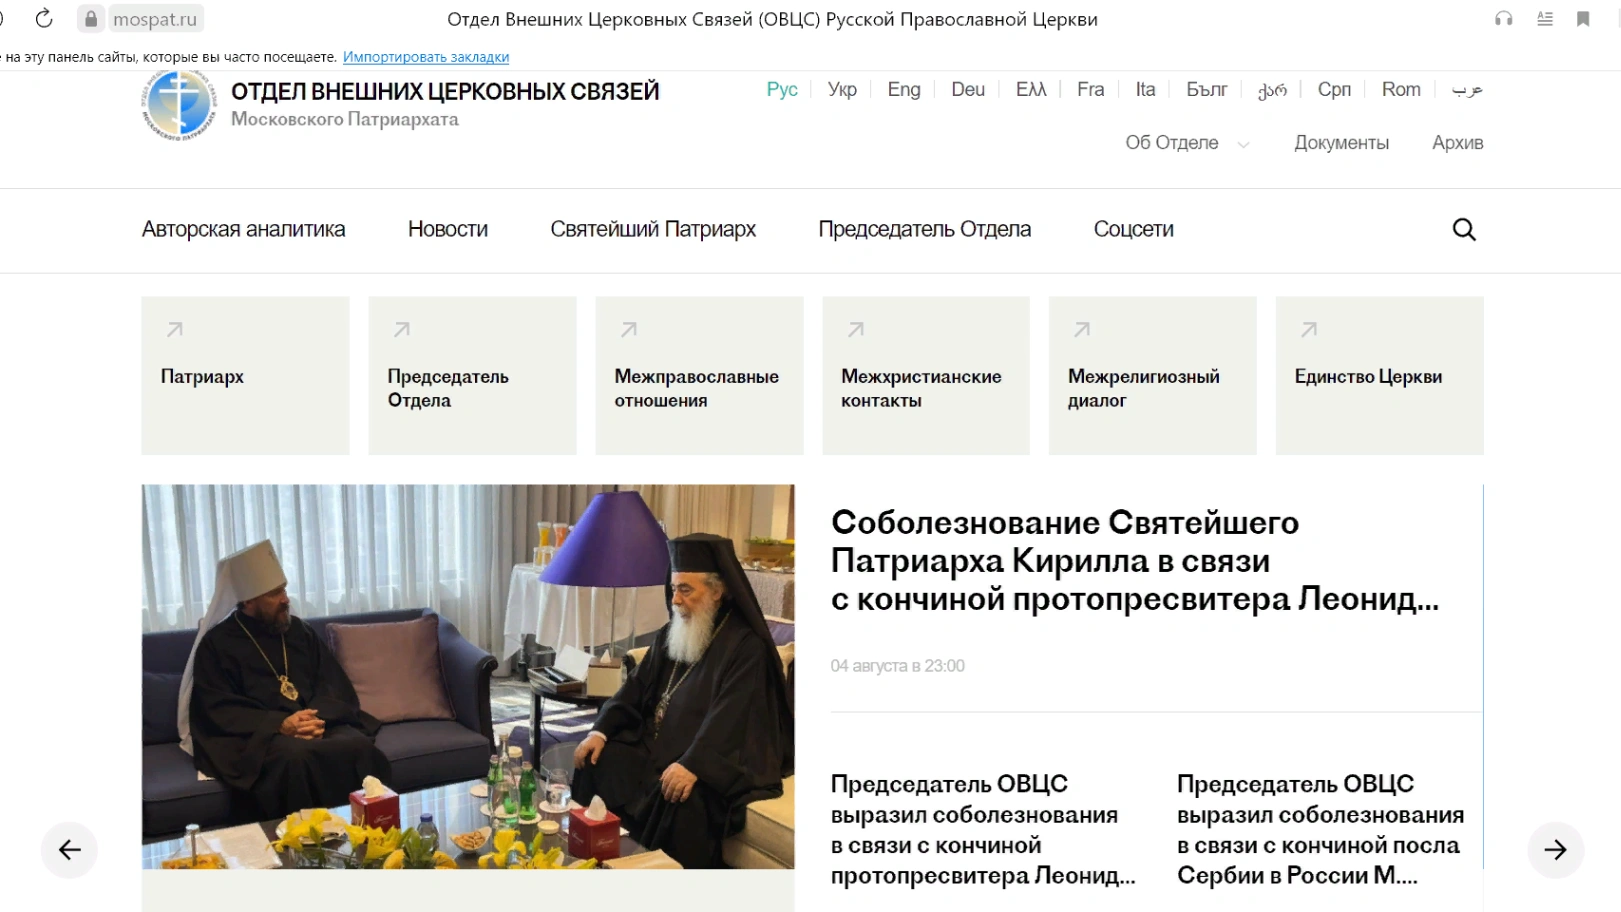 יצירת אתר המדגיש את הפעילות החיצונית של הכנסייה הרוסית האורתודוכסית